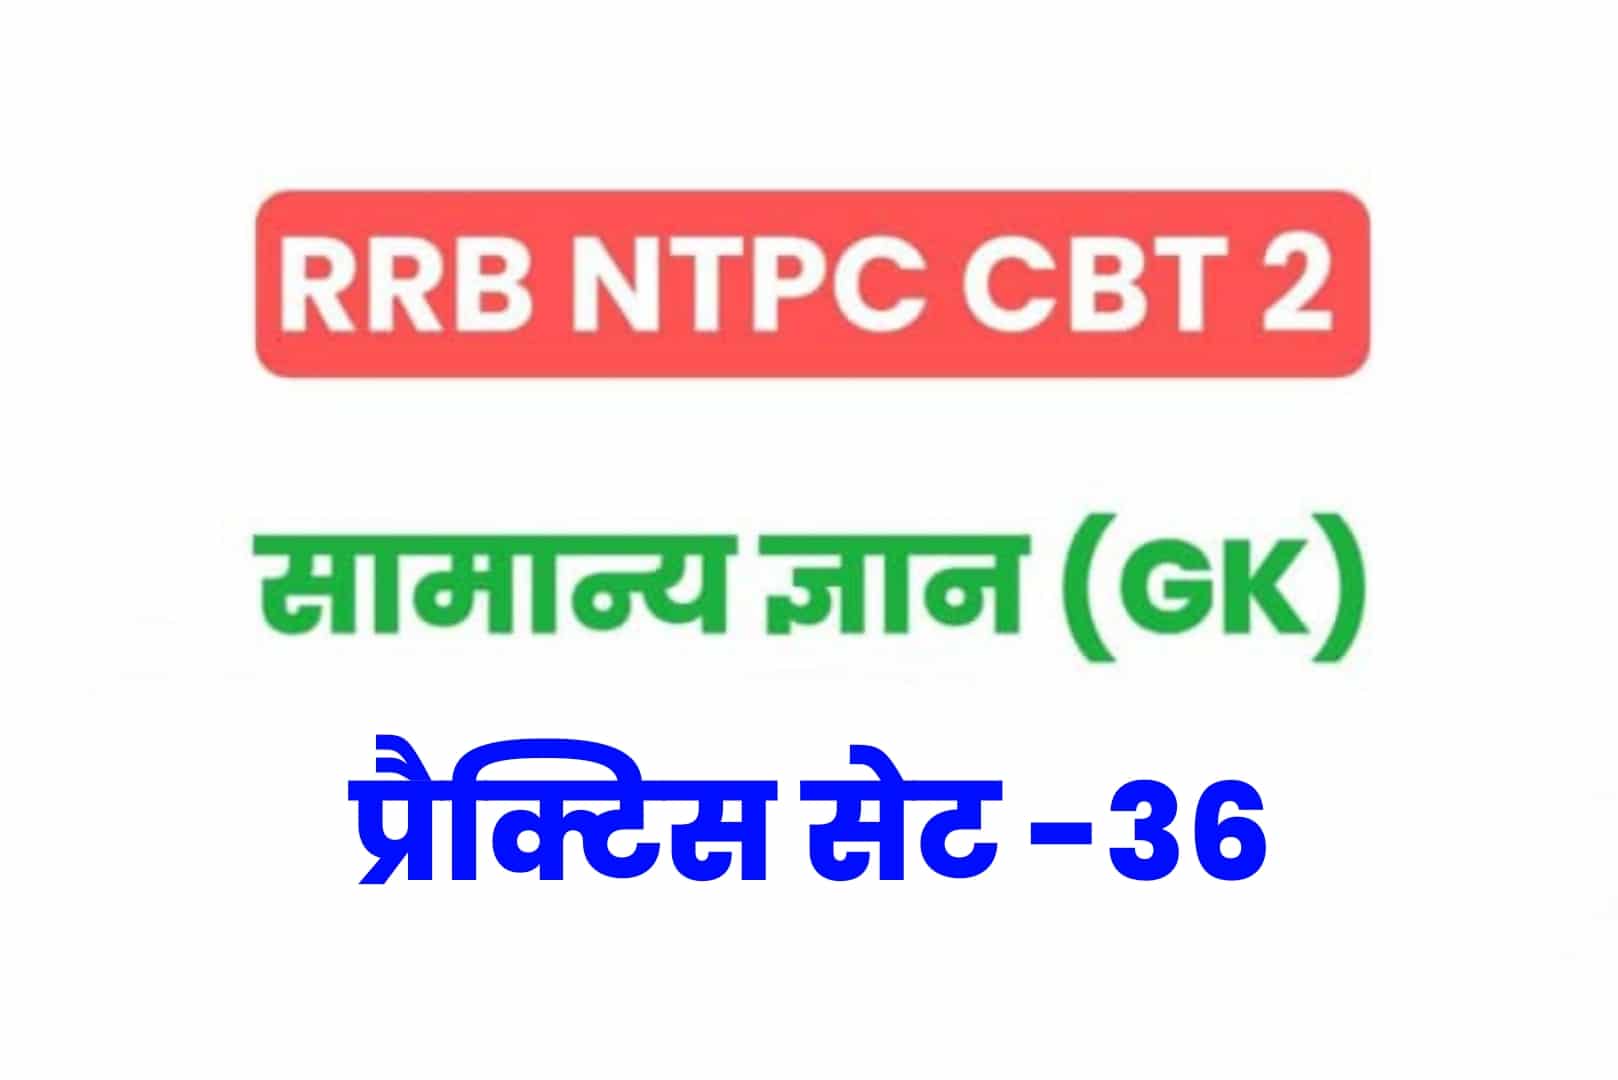 RRB NTPC CBT 2 GK प्रैक्टिस सेट 36: परीक्षा में बैठने से पहले सामान्य ज्ञान के 25 मुख्य MCQ को अवश्य पढ़ें